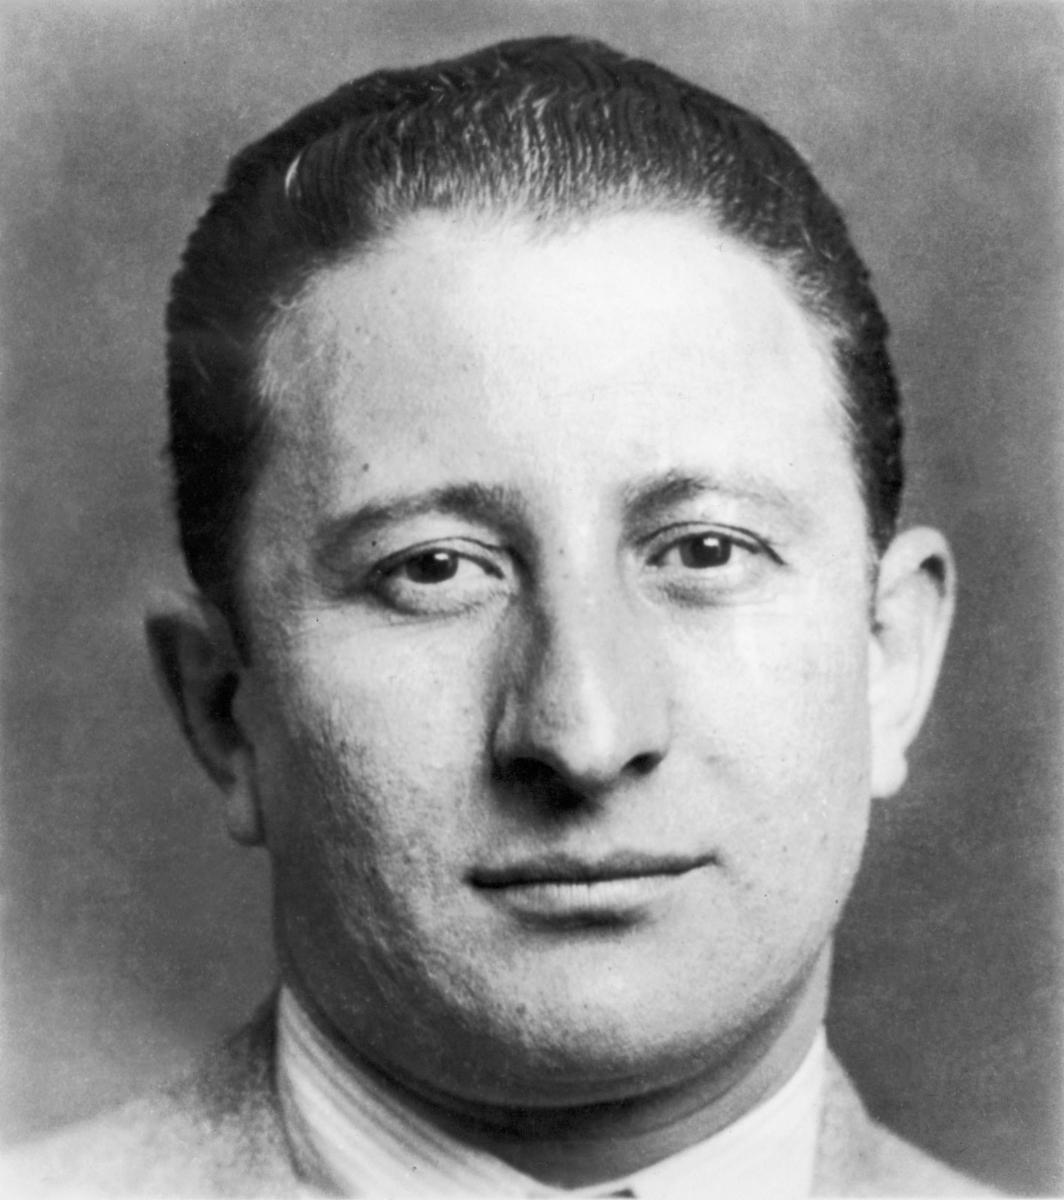 Carlo Gambino mugshot from the 1930s